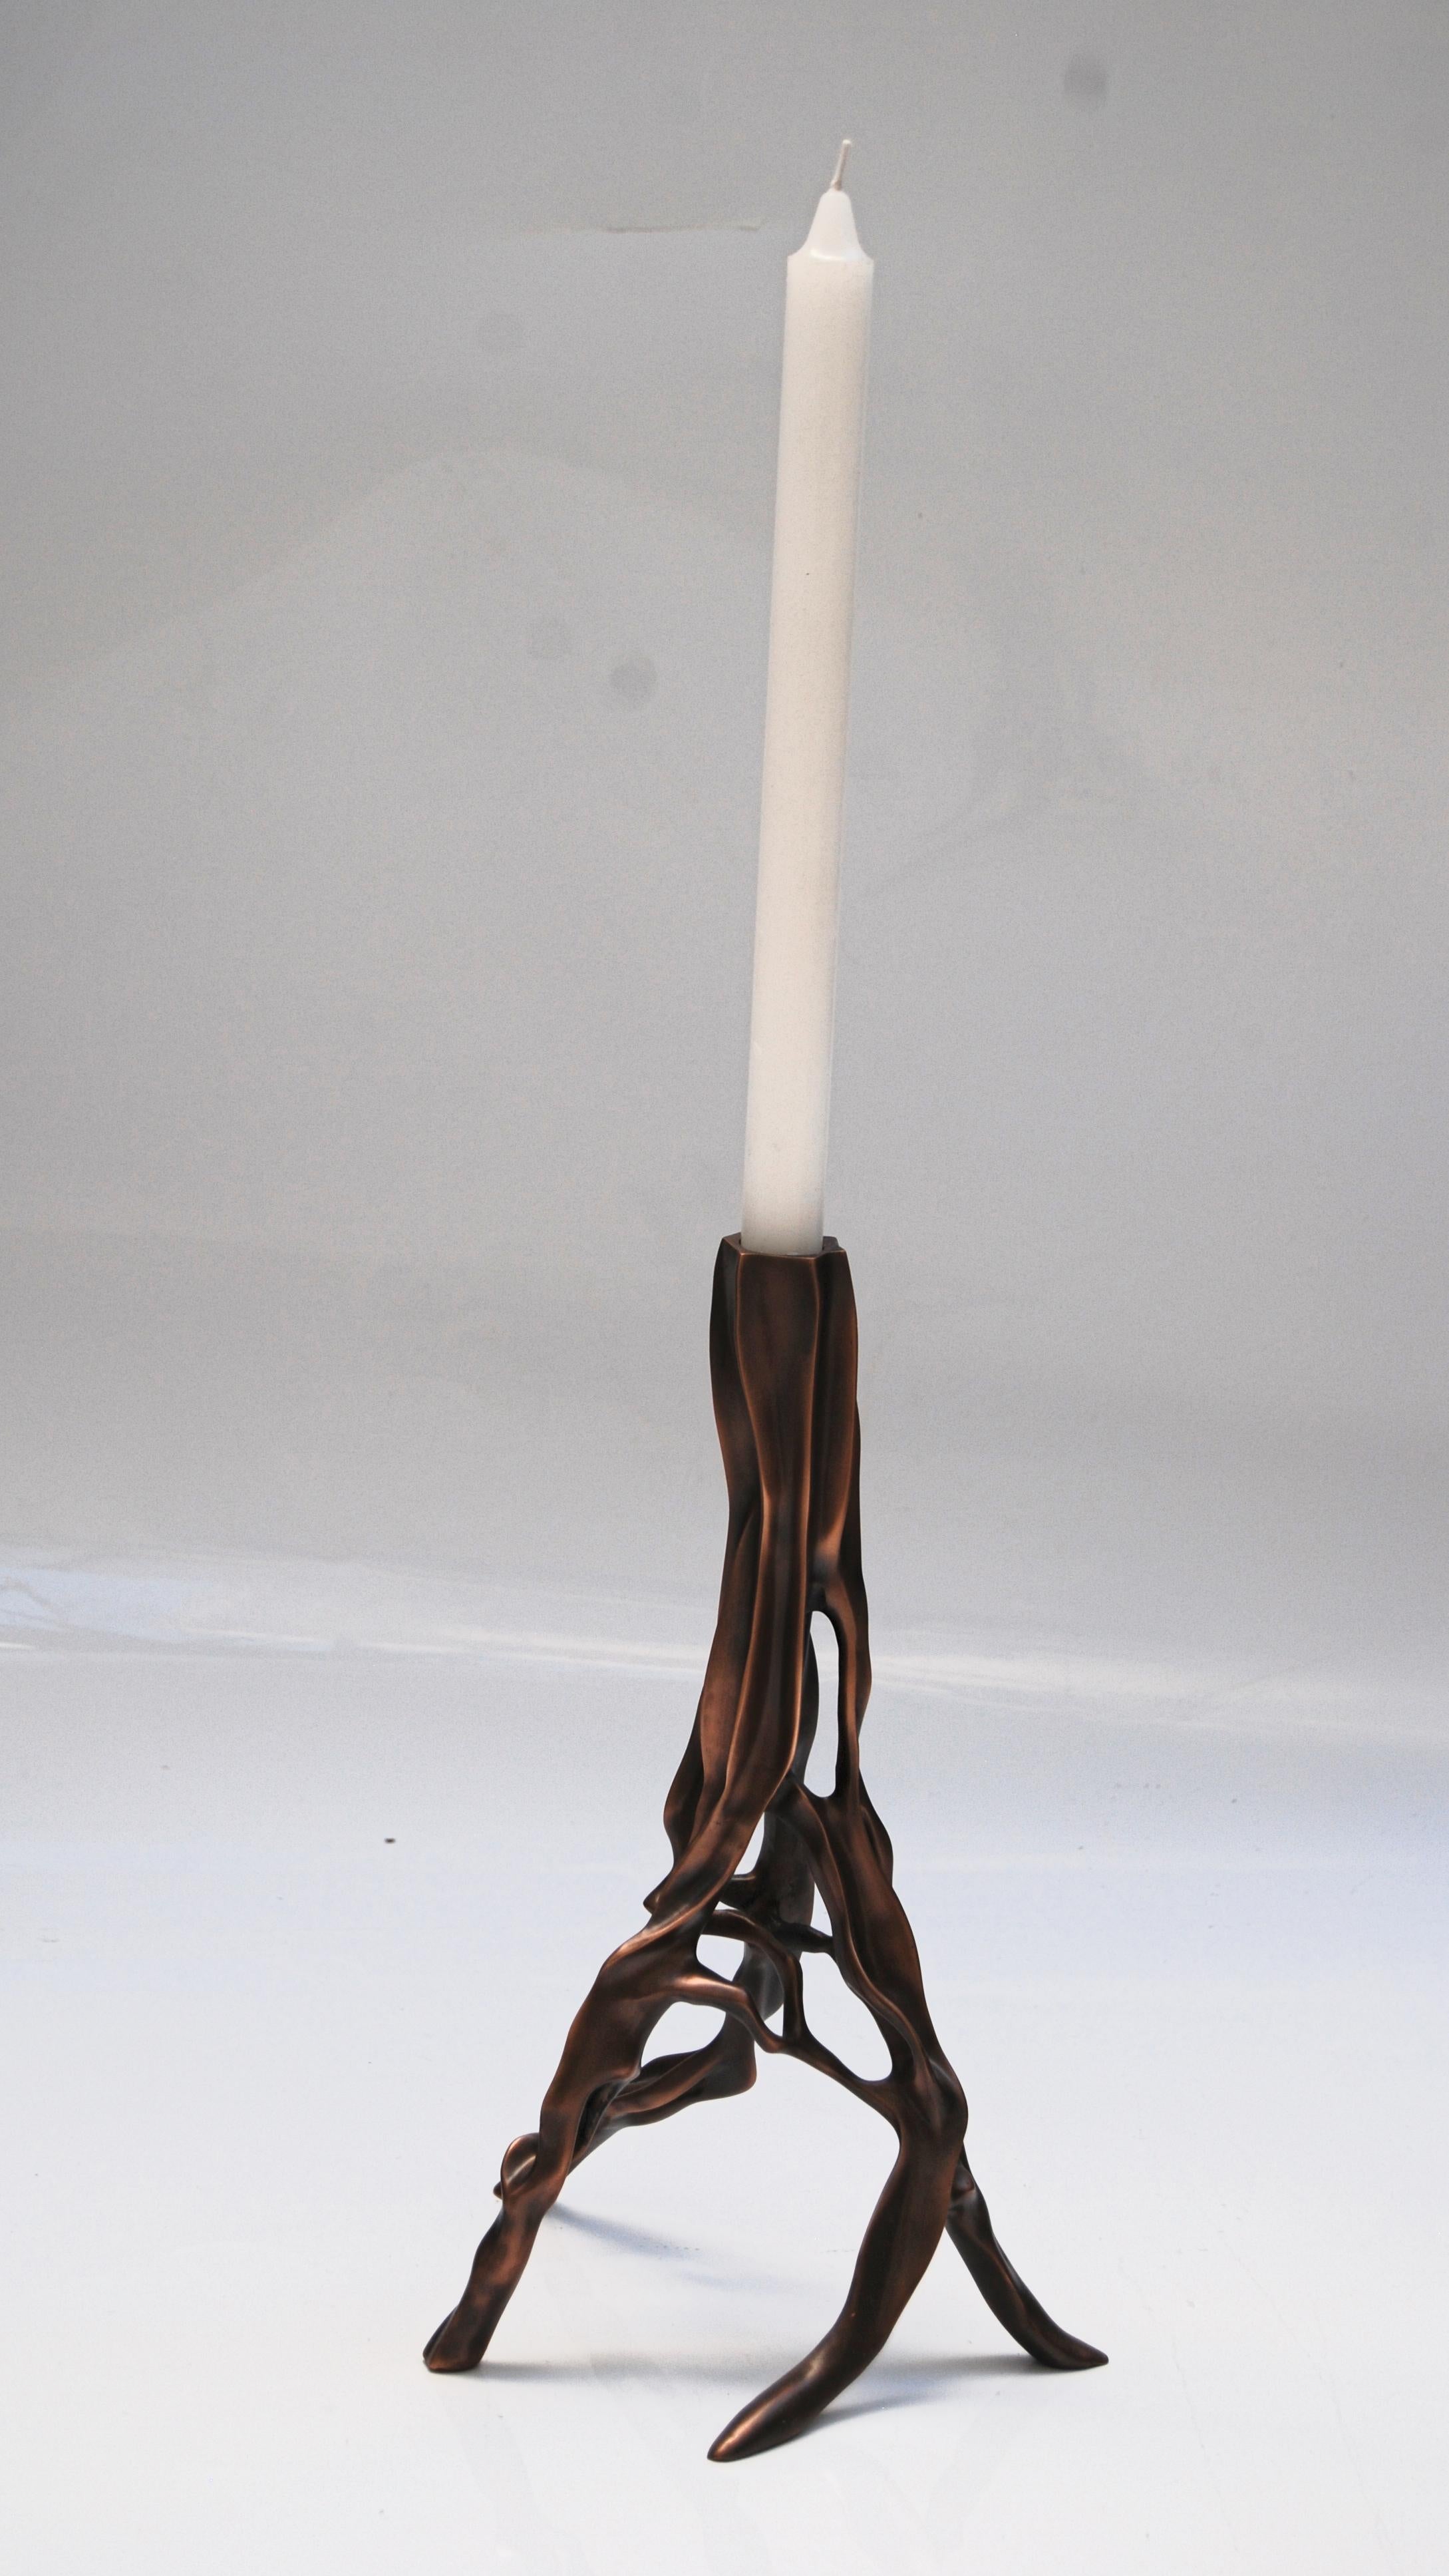 Candlestick in dark bronze by FAKASAKA Design
Dimensions: W 20 x D 19 x H 30.5 cm
Materials: dark bronze.
 